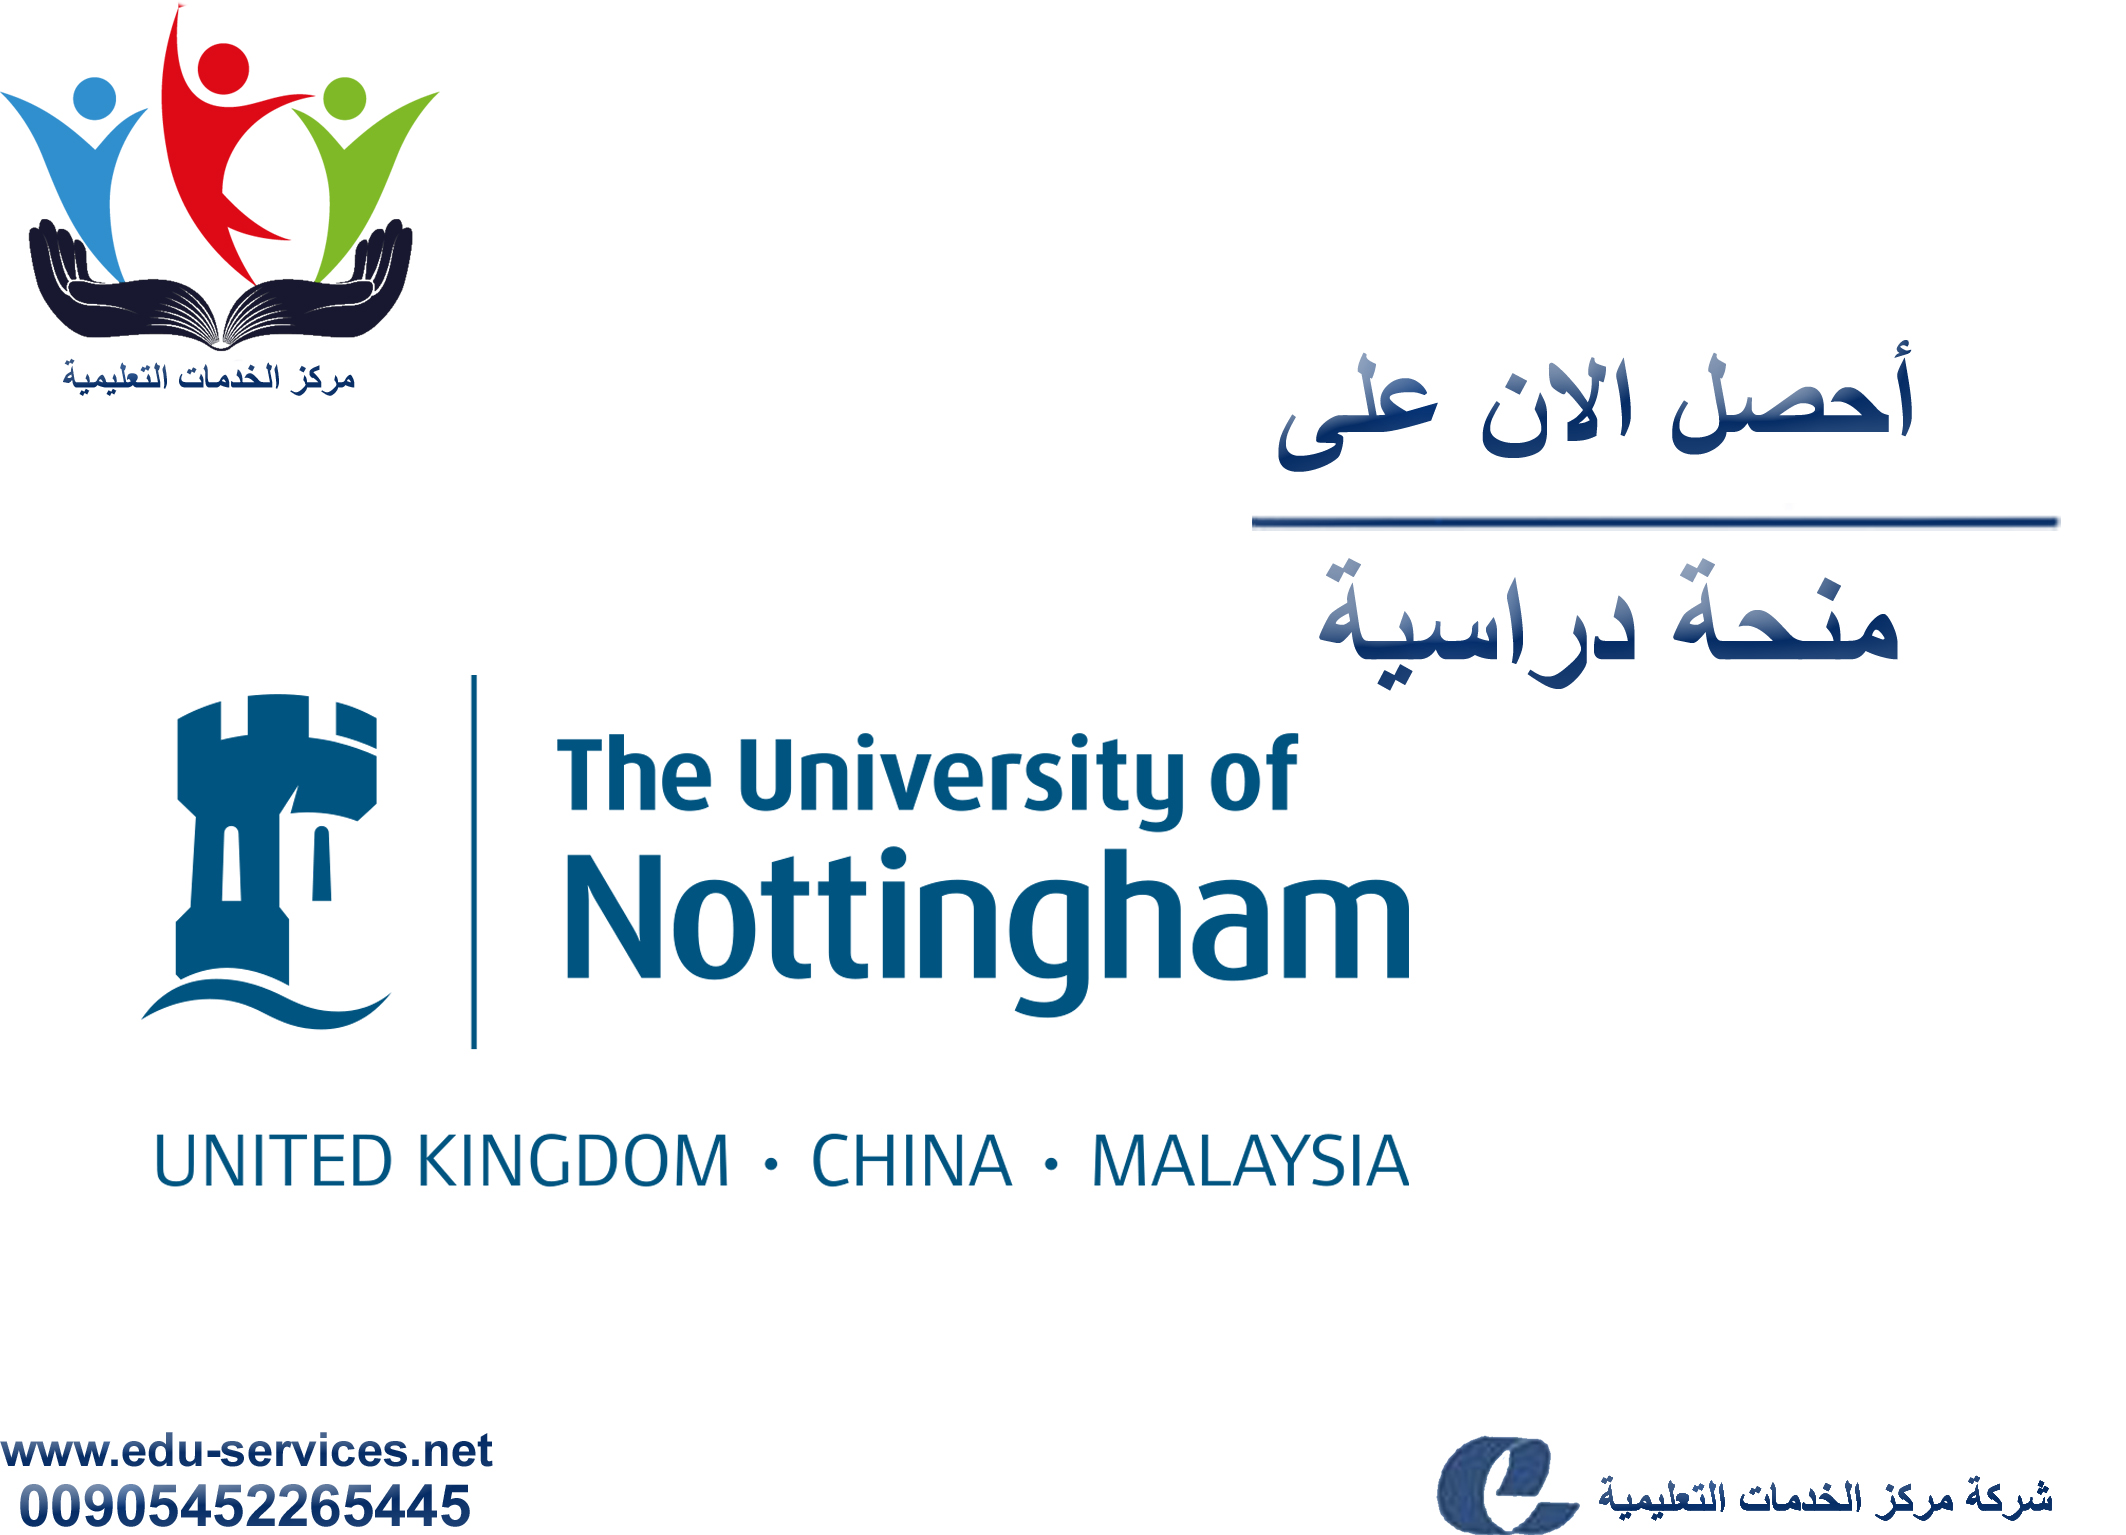 منح دراسية لدرجة الماجستير من Nottingham في ماليزيا للعام 2018-2019